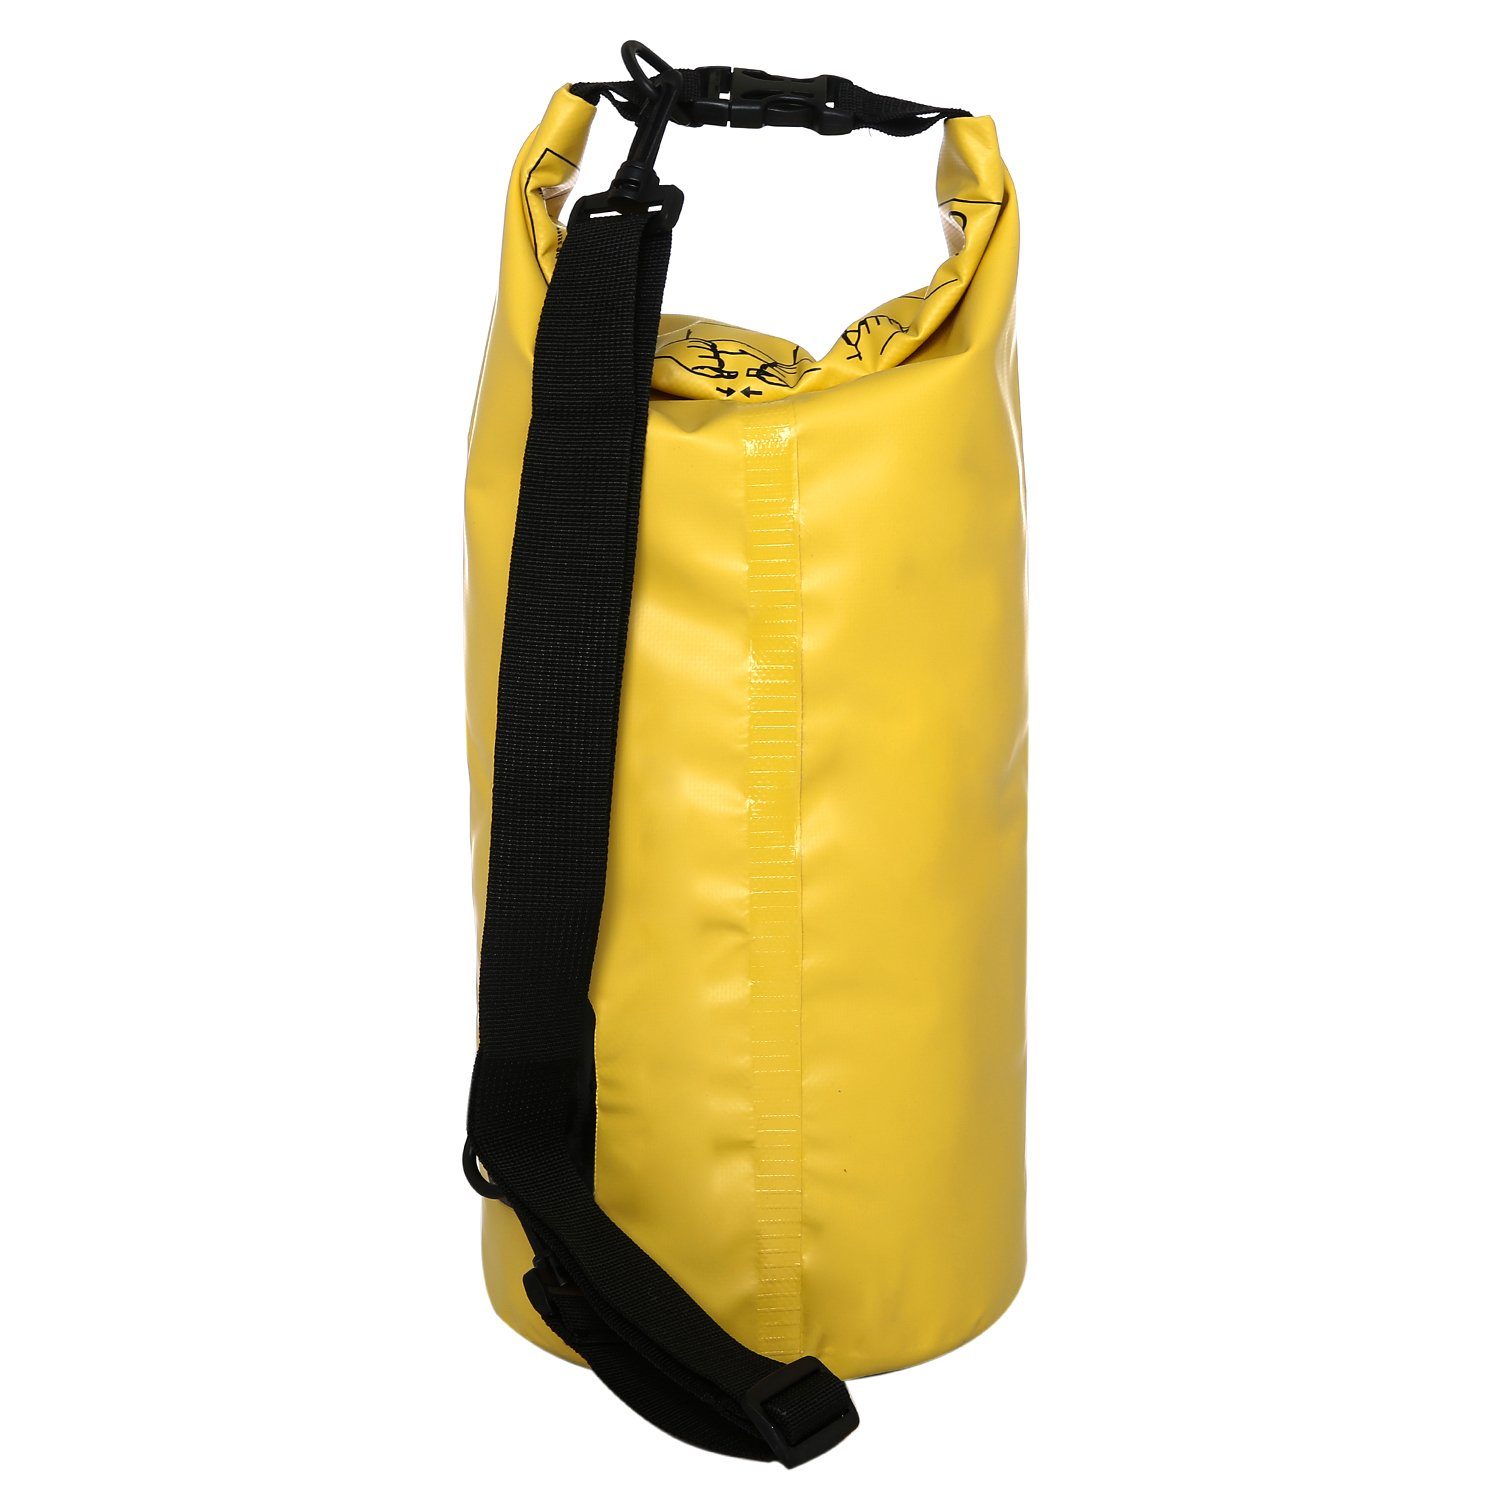 (1-tlg), Beutel gelb Drybag outdoor Trockentasche Trockenbeutel DonDon Drybag wasserdichter